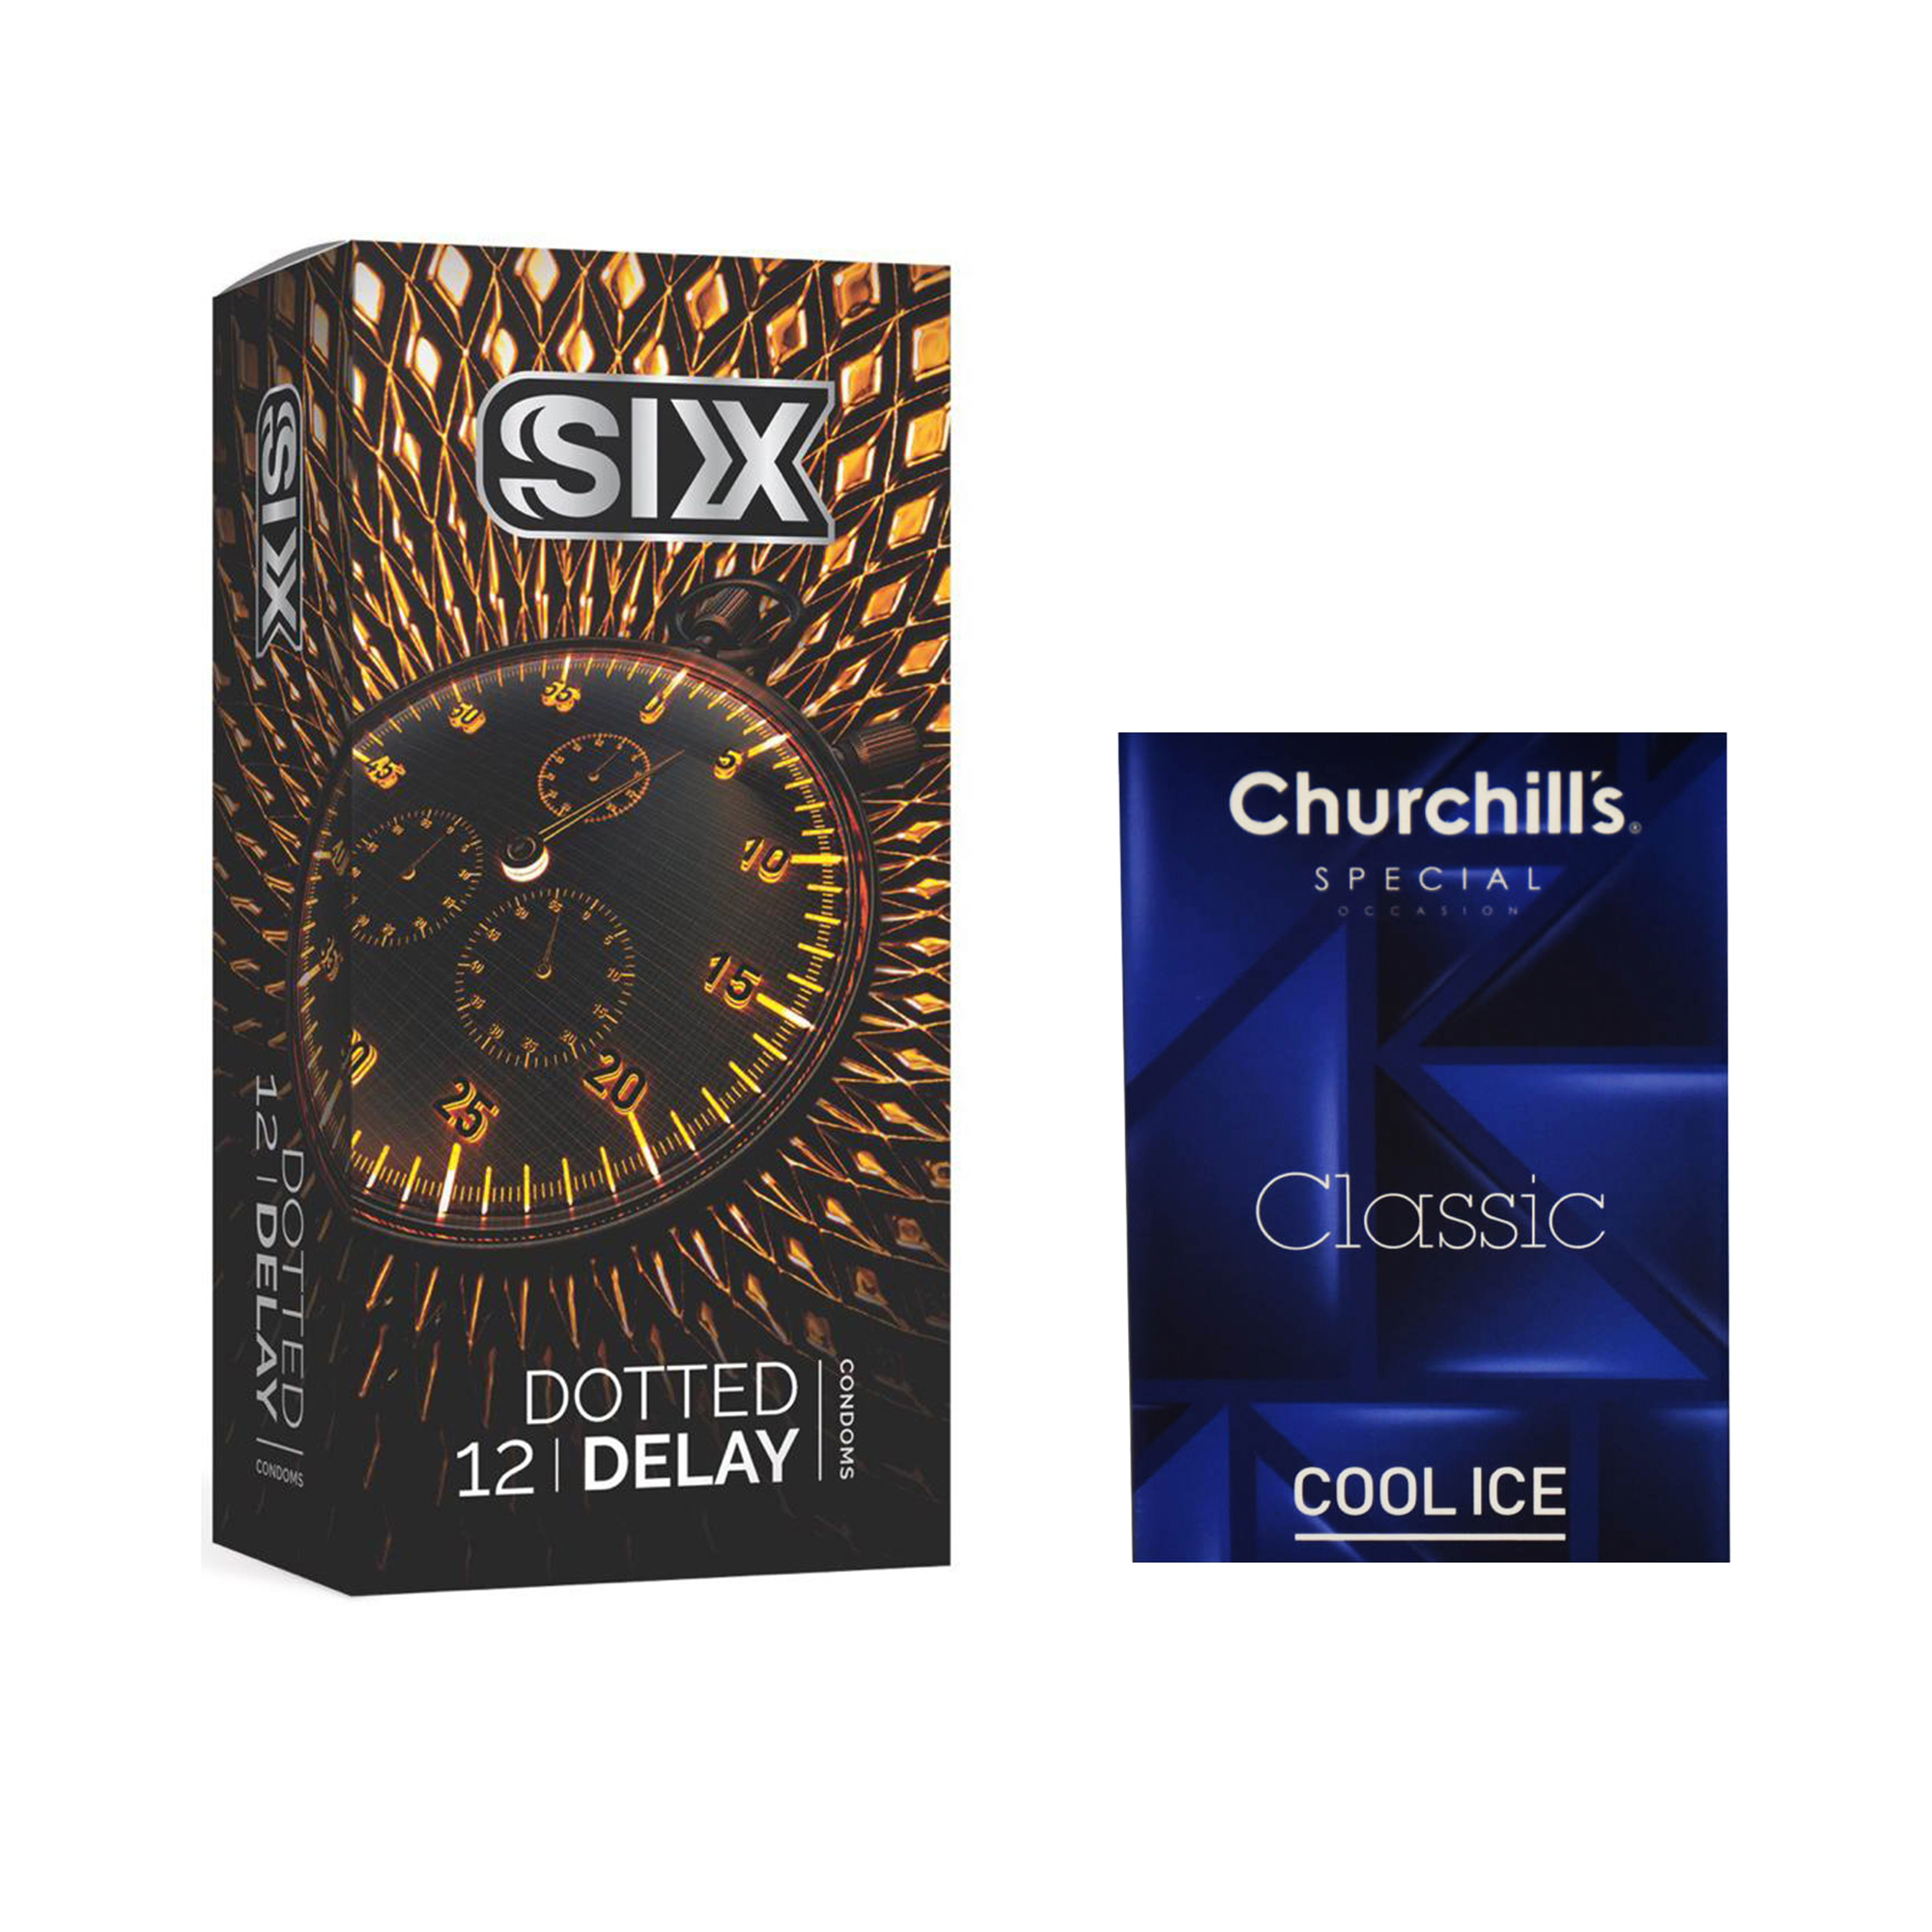 کاندوم سیکس مدل Dotted Delay بسته 12 عددی به همراه کاندوم چرچیلز مدل Cool Ice بسته 3 عددی